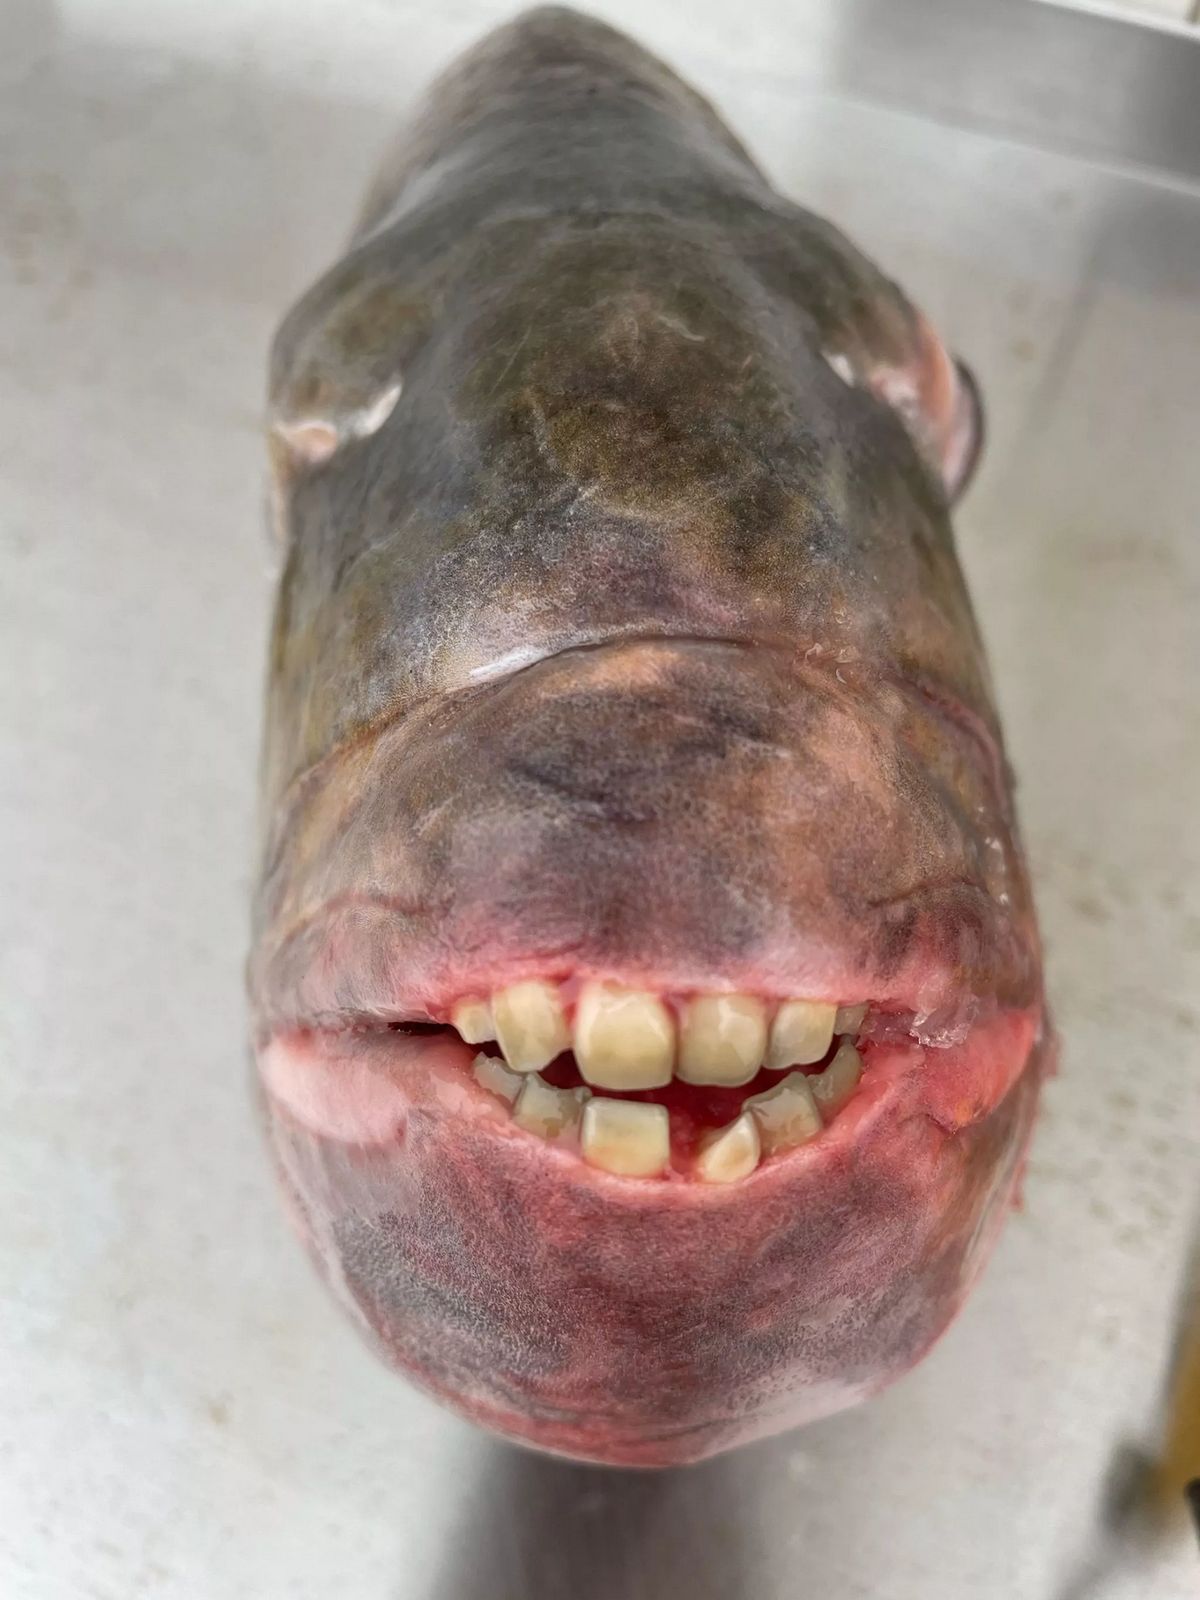 Ce poisson, connu sous le nom de rondeau mouton, est difficile à attraper et est célèbre pour ses dents adaptées à son régime alimentaire.